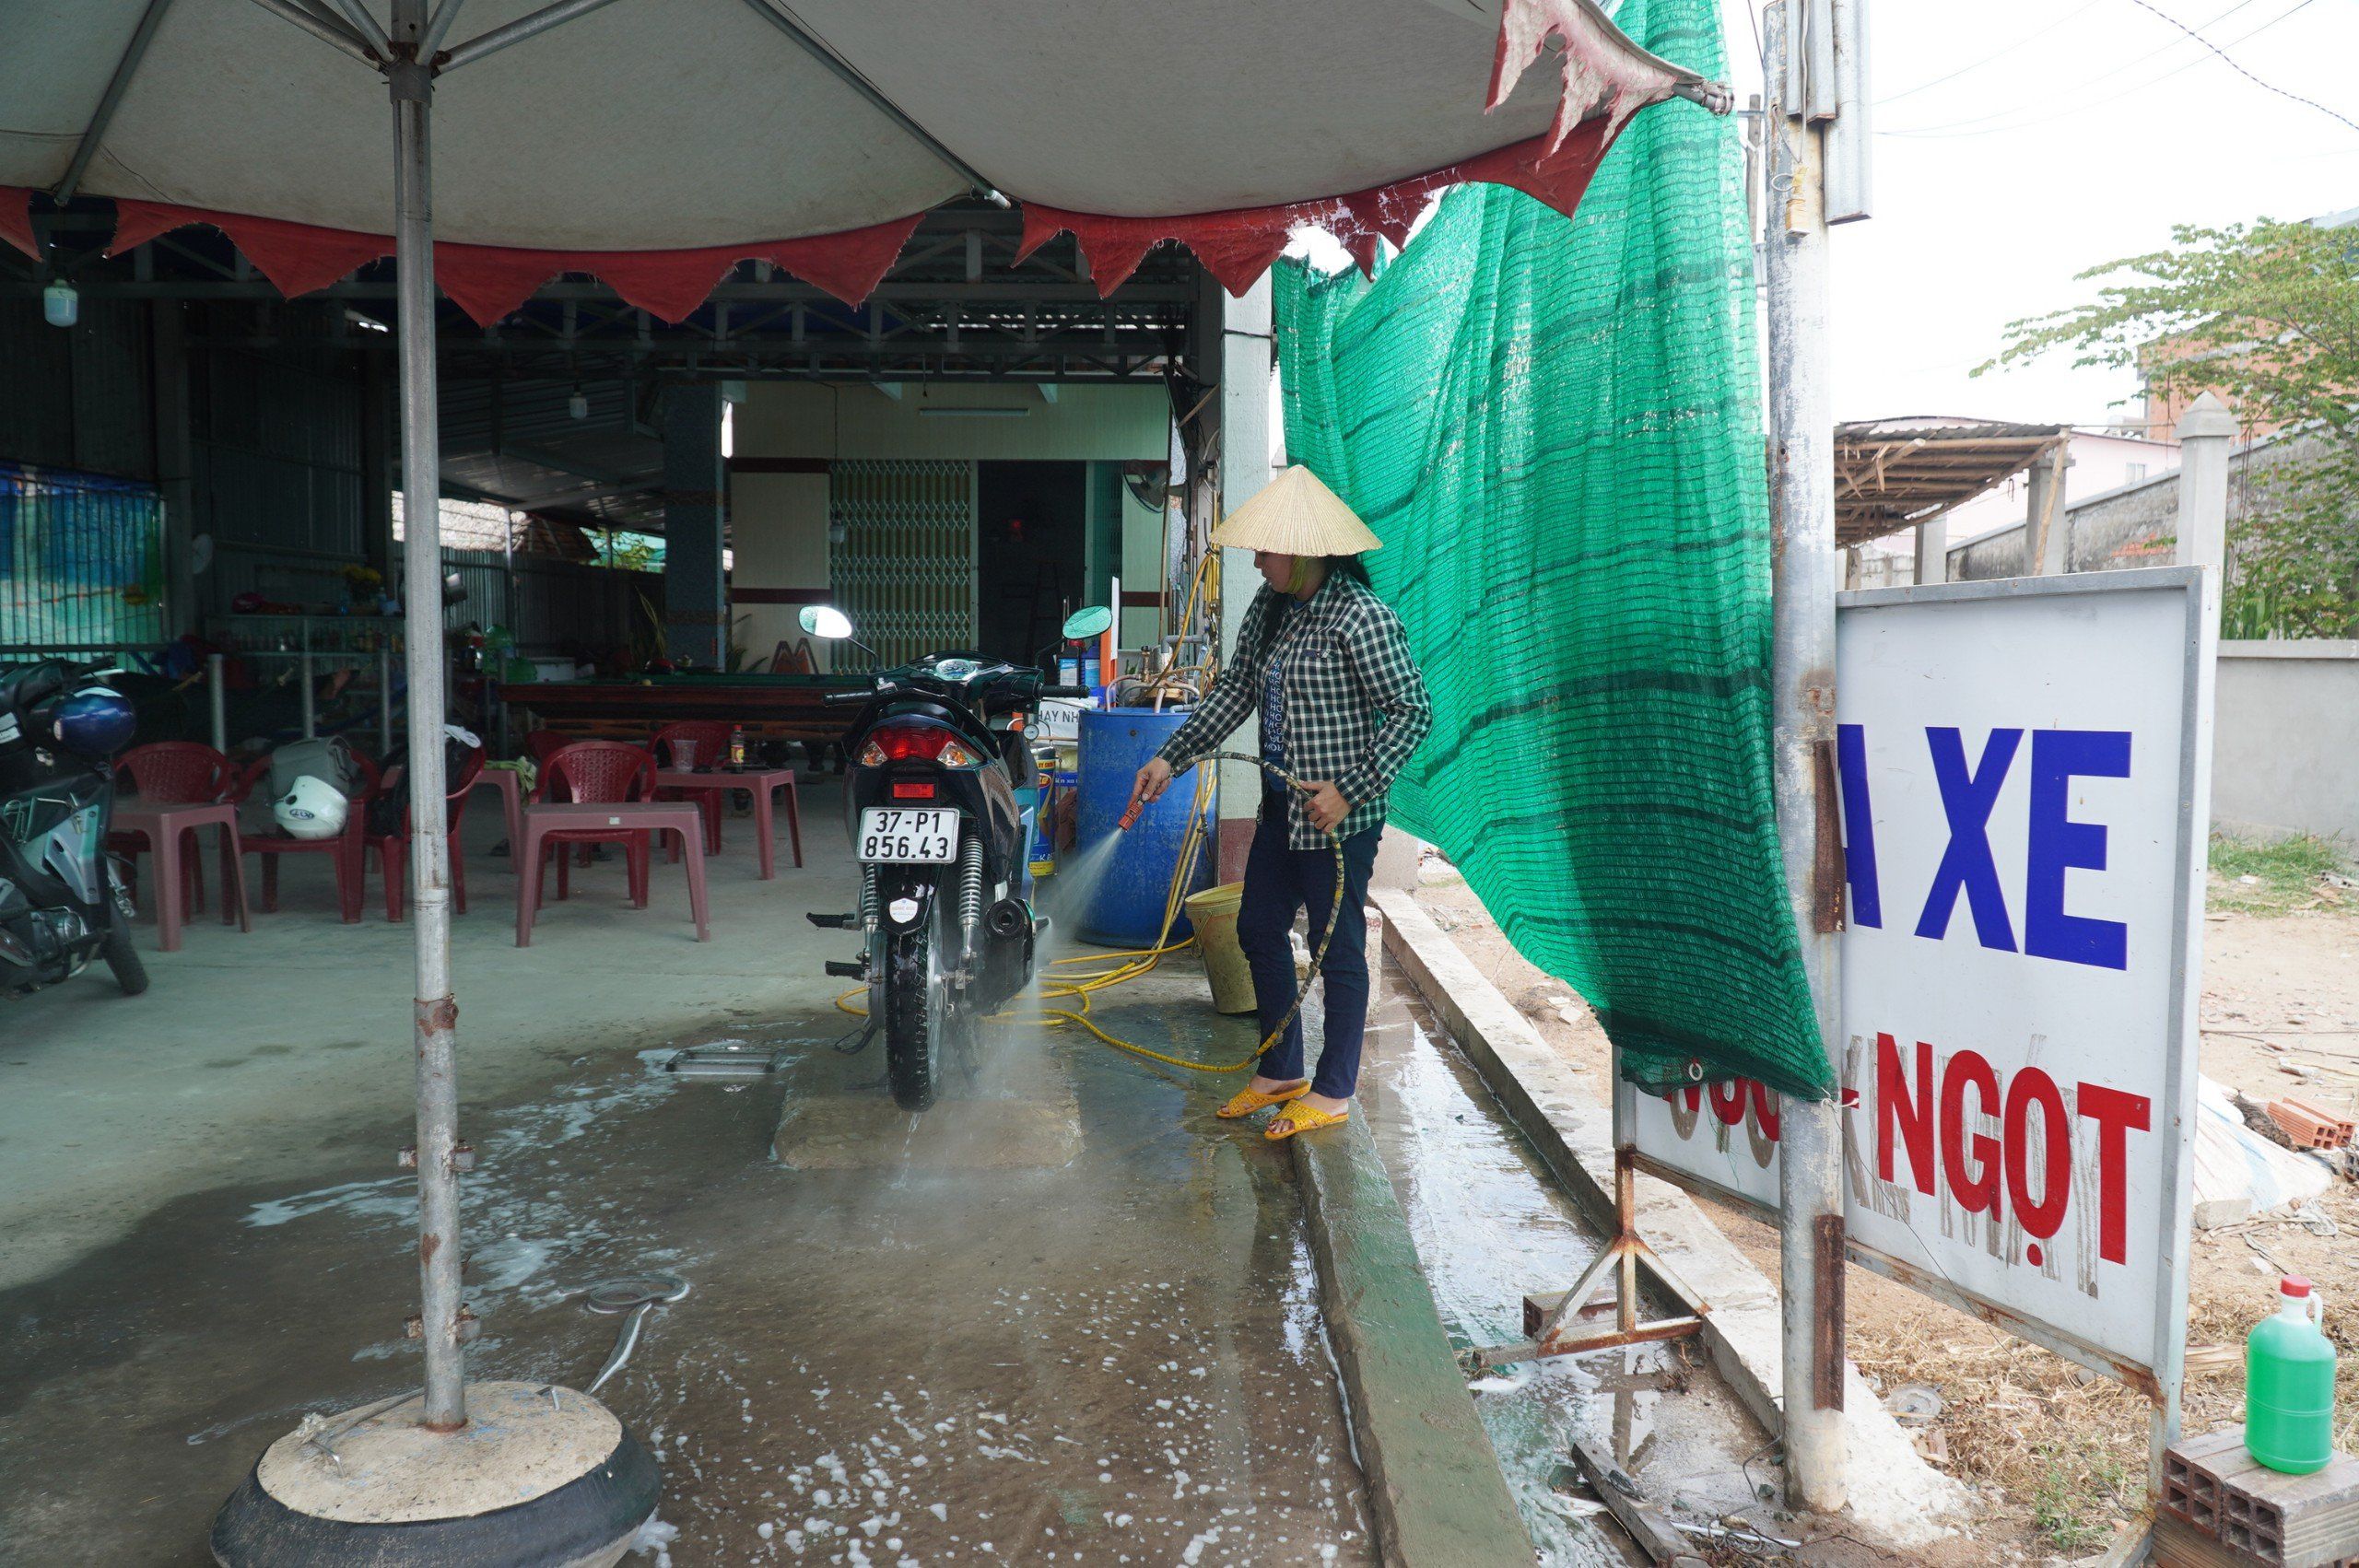 Quán rửa xe của chị Quỳnh phải mua nước ngọt về để rửa xe cho khách, tăng thêm 5.000 đồng/lượt rửa xe.